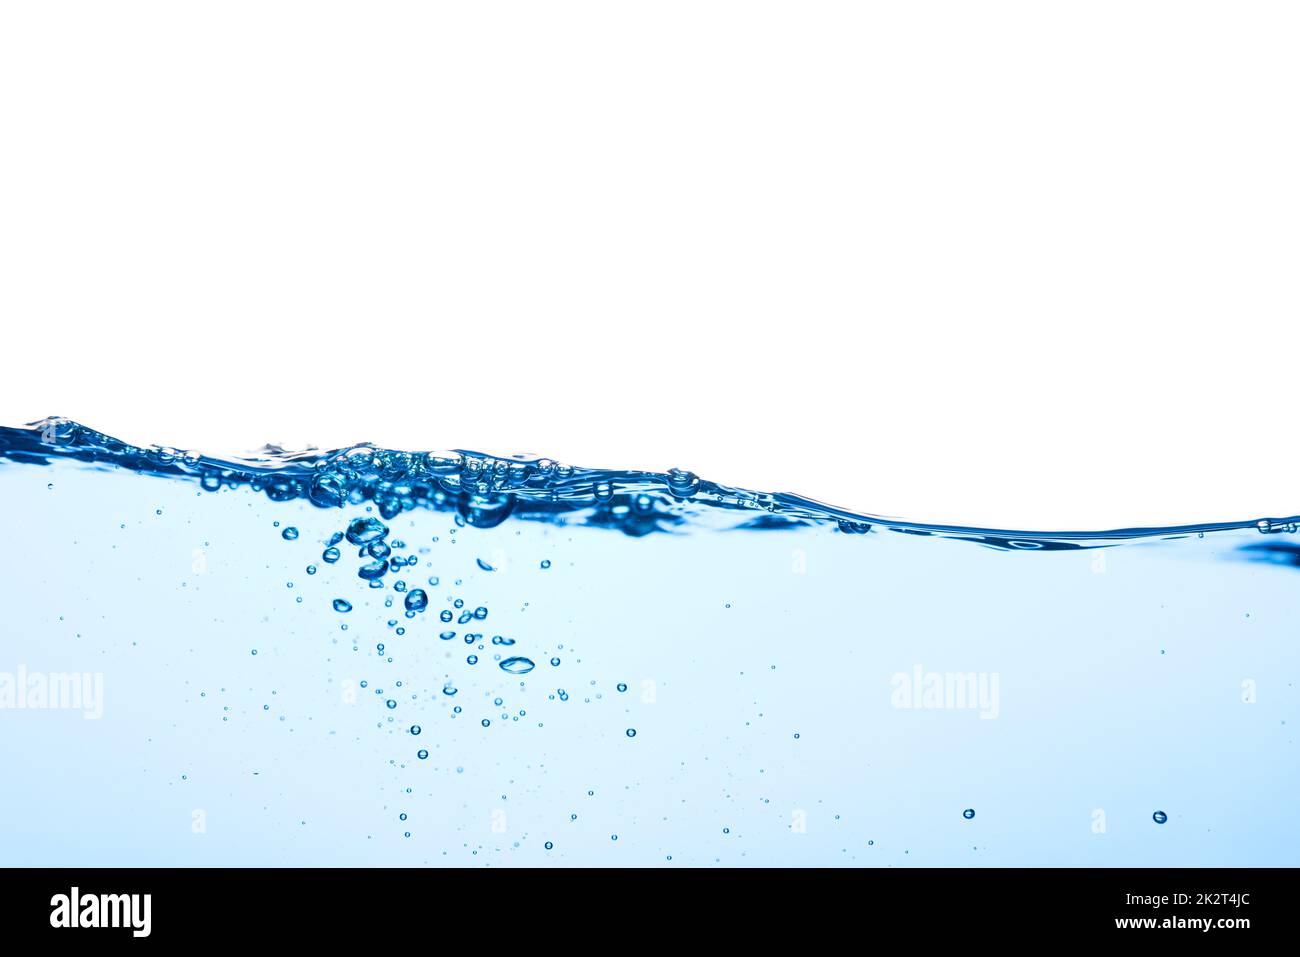 Hellblaue Wasserwelle mit Luftblasen und ein wenig Etwas unter Wasser gespritzt Stockfoto